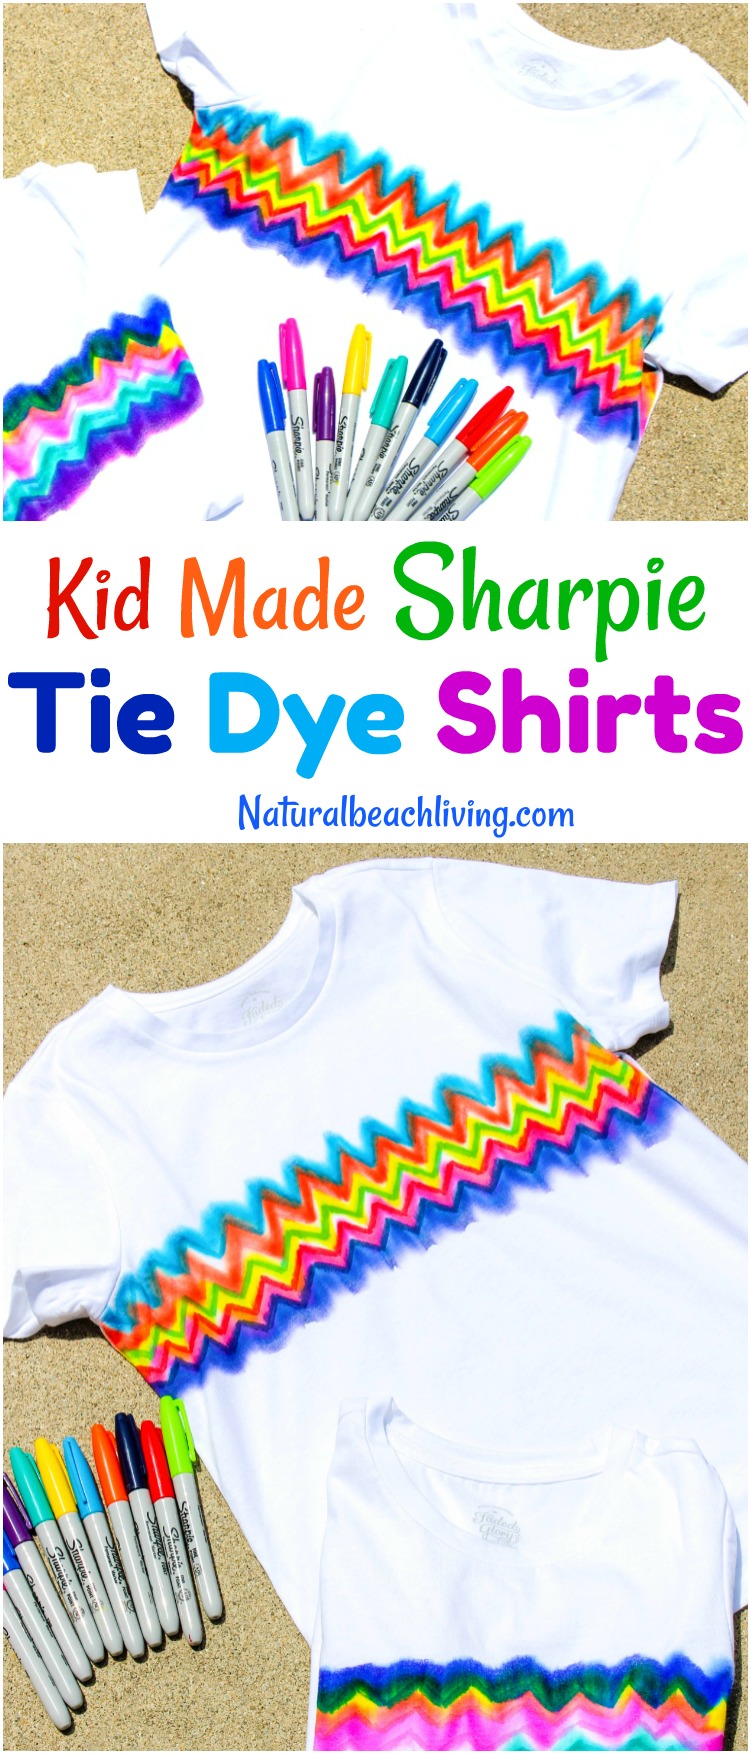 Learn How to Make Super Cool Sharpie Tie Dye Shirts, Tie Dye Craft, Kid Made Gifts, Summer Crafts for kids, Sharpie Art Ideas, Sharpie dyeing, Kid art, Sharpie Crafts 